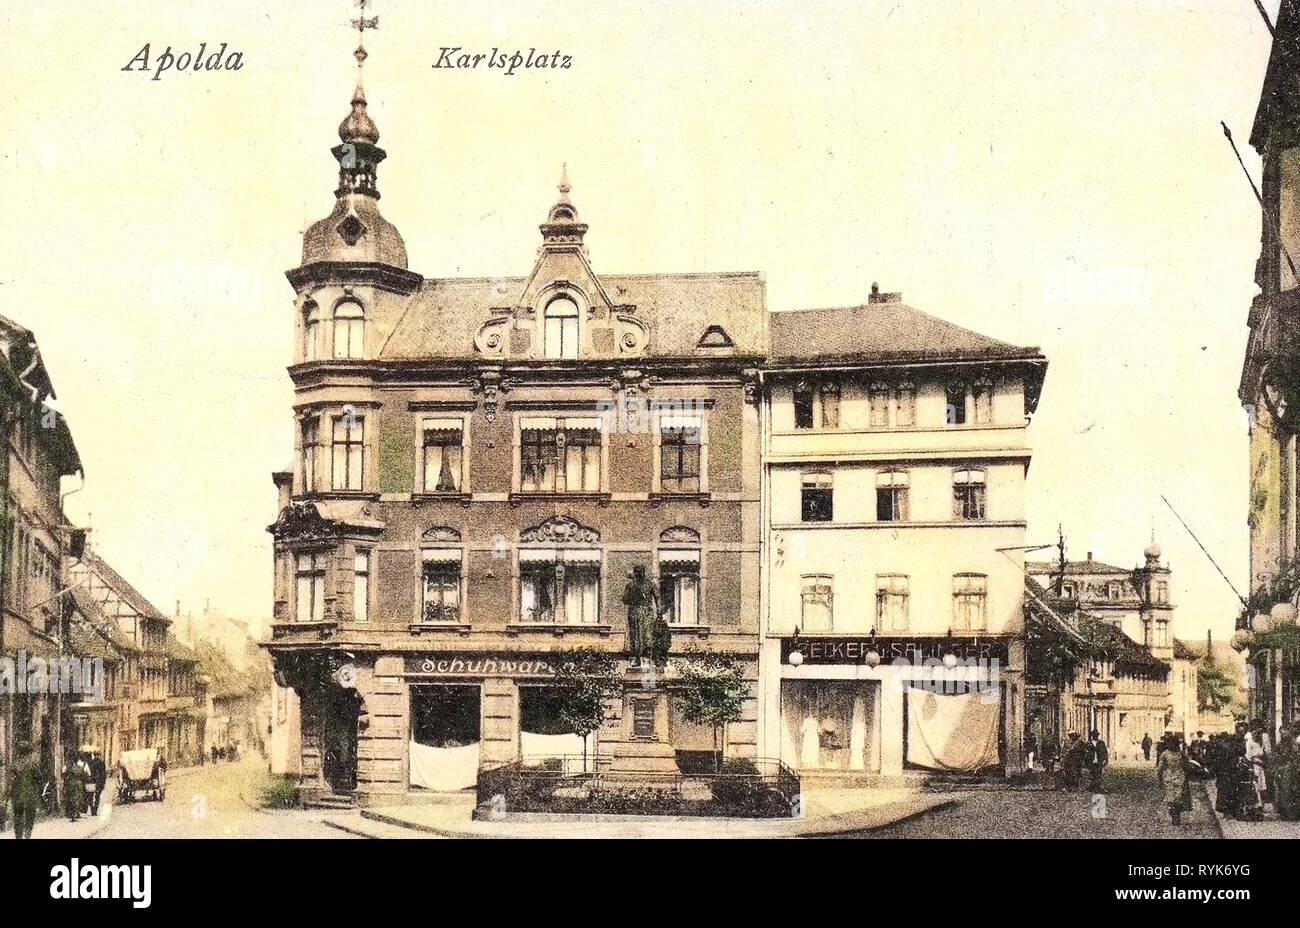 Buildings in Apolda, Christian-Zimmermann-Denkmal (Apolda), Alexander-Puschkin-Platz (Apolda), 1918, Thuringia, Apolda, Karlsplatz Stock Photo